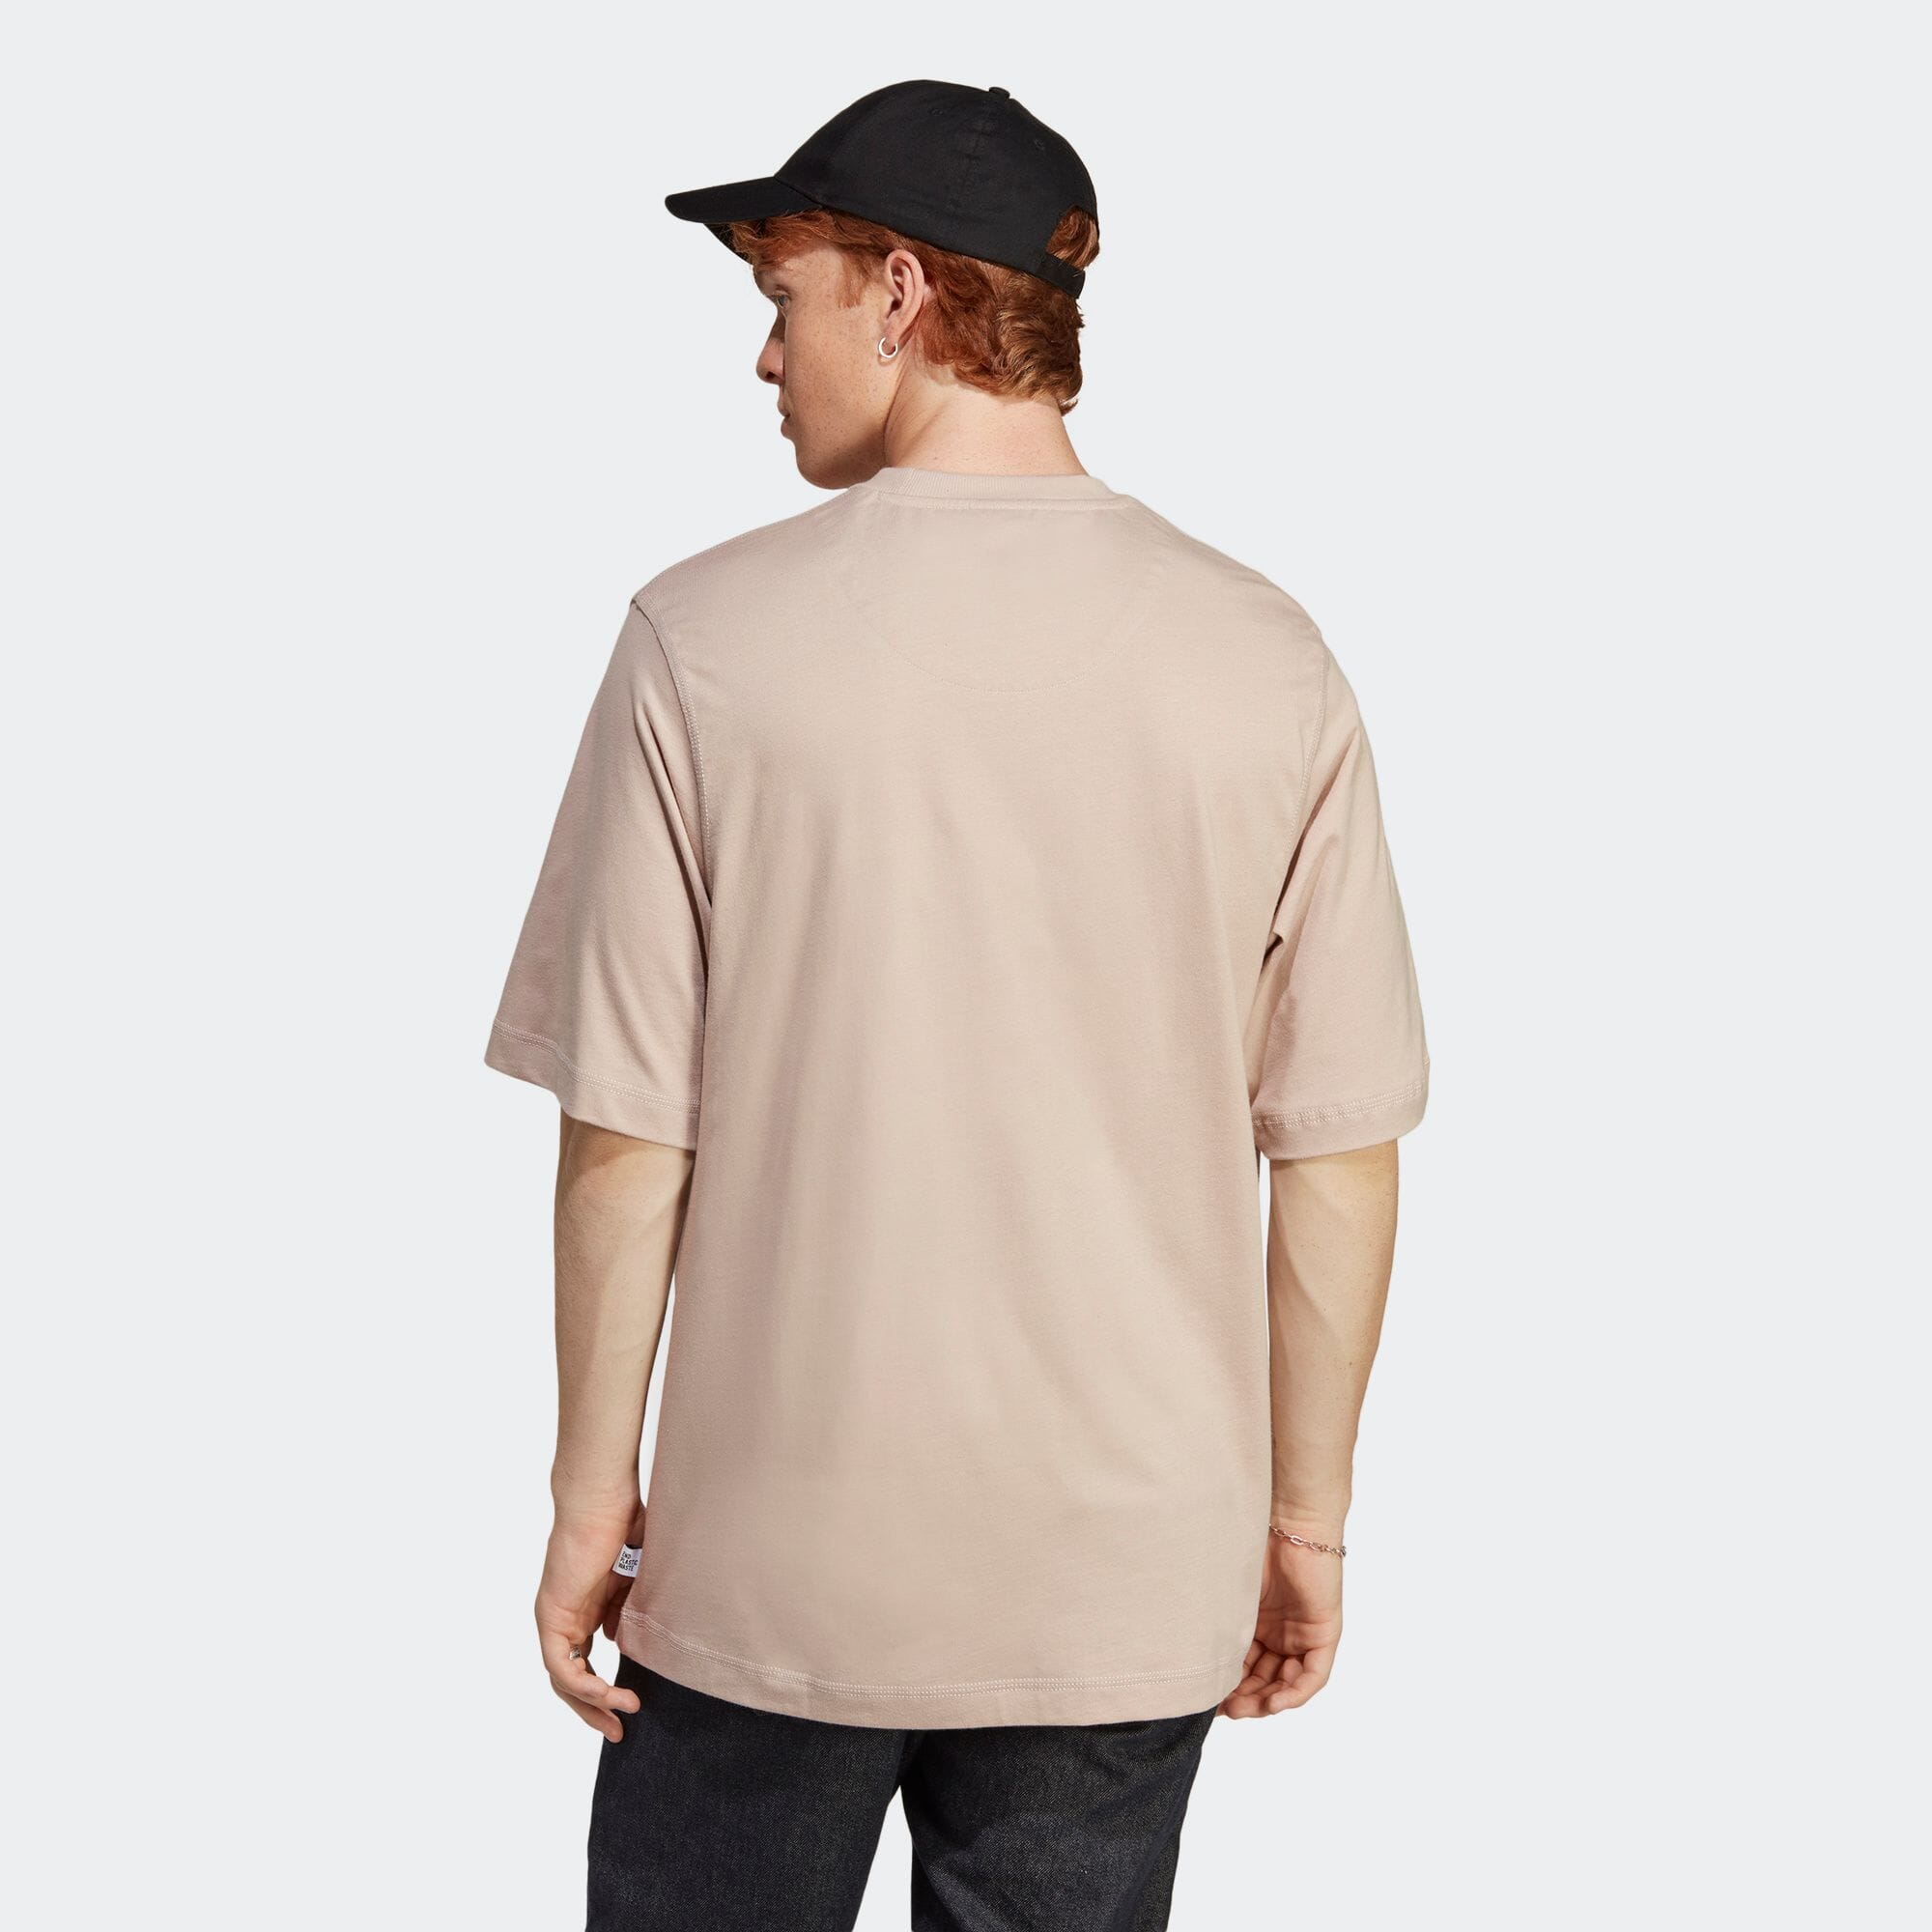 ラウンジ 半袖Tシャツ メンズ スポーツウェア